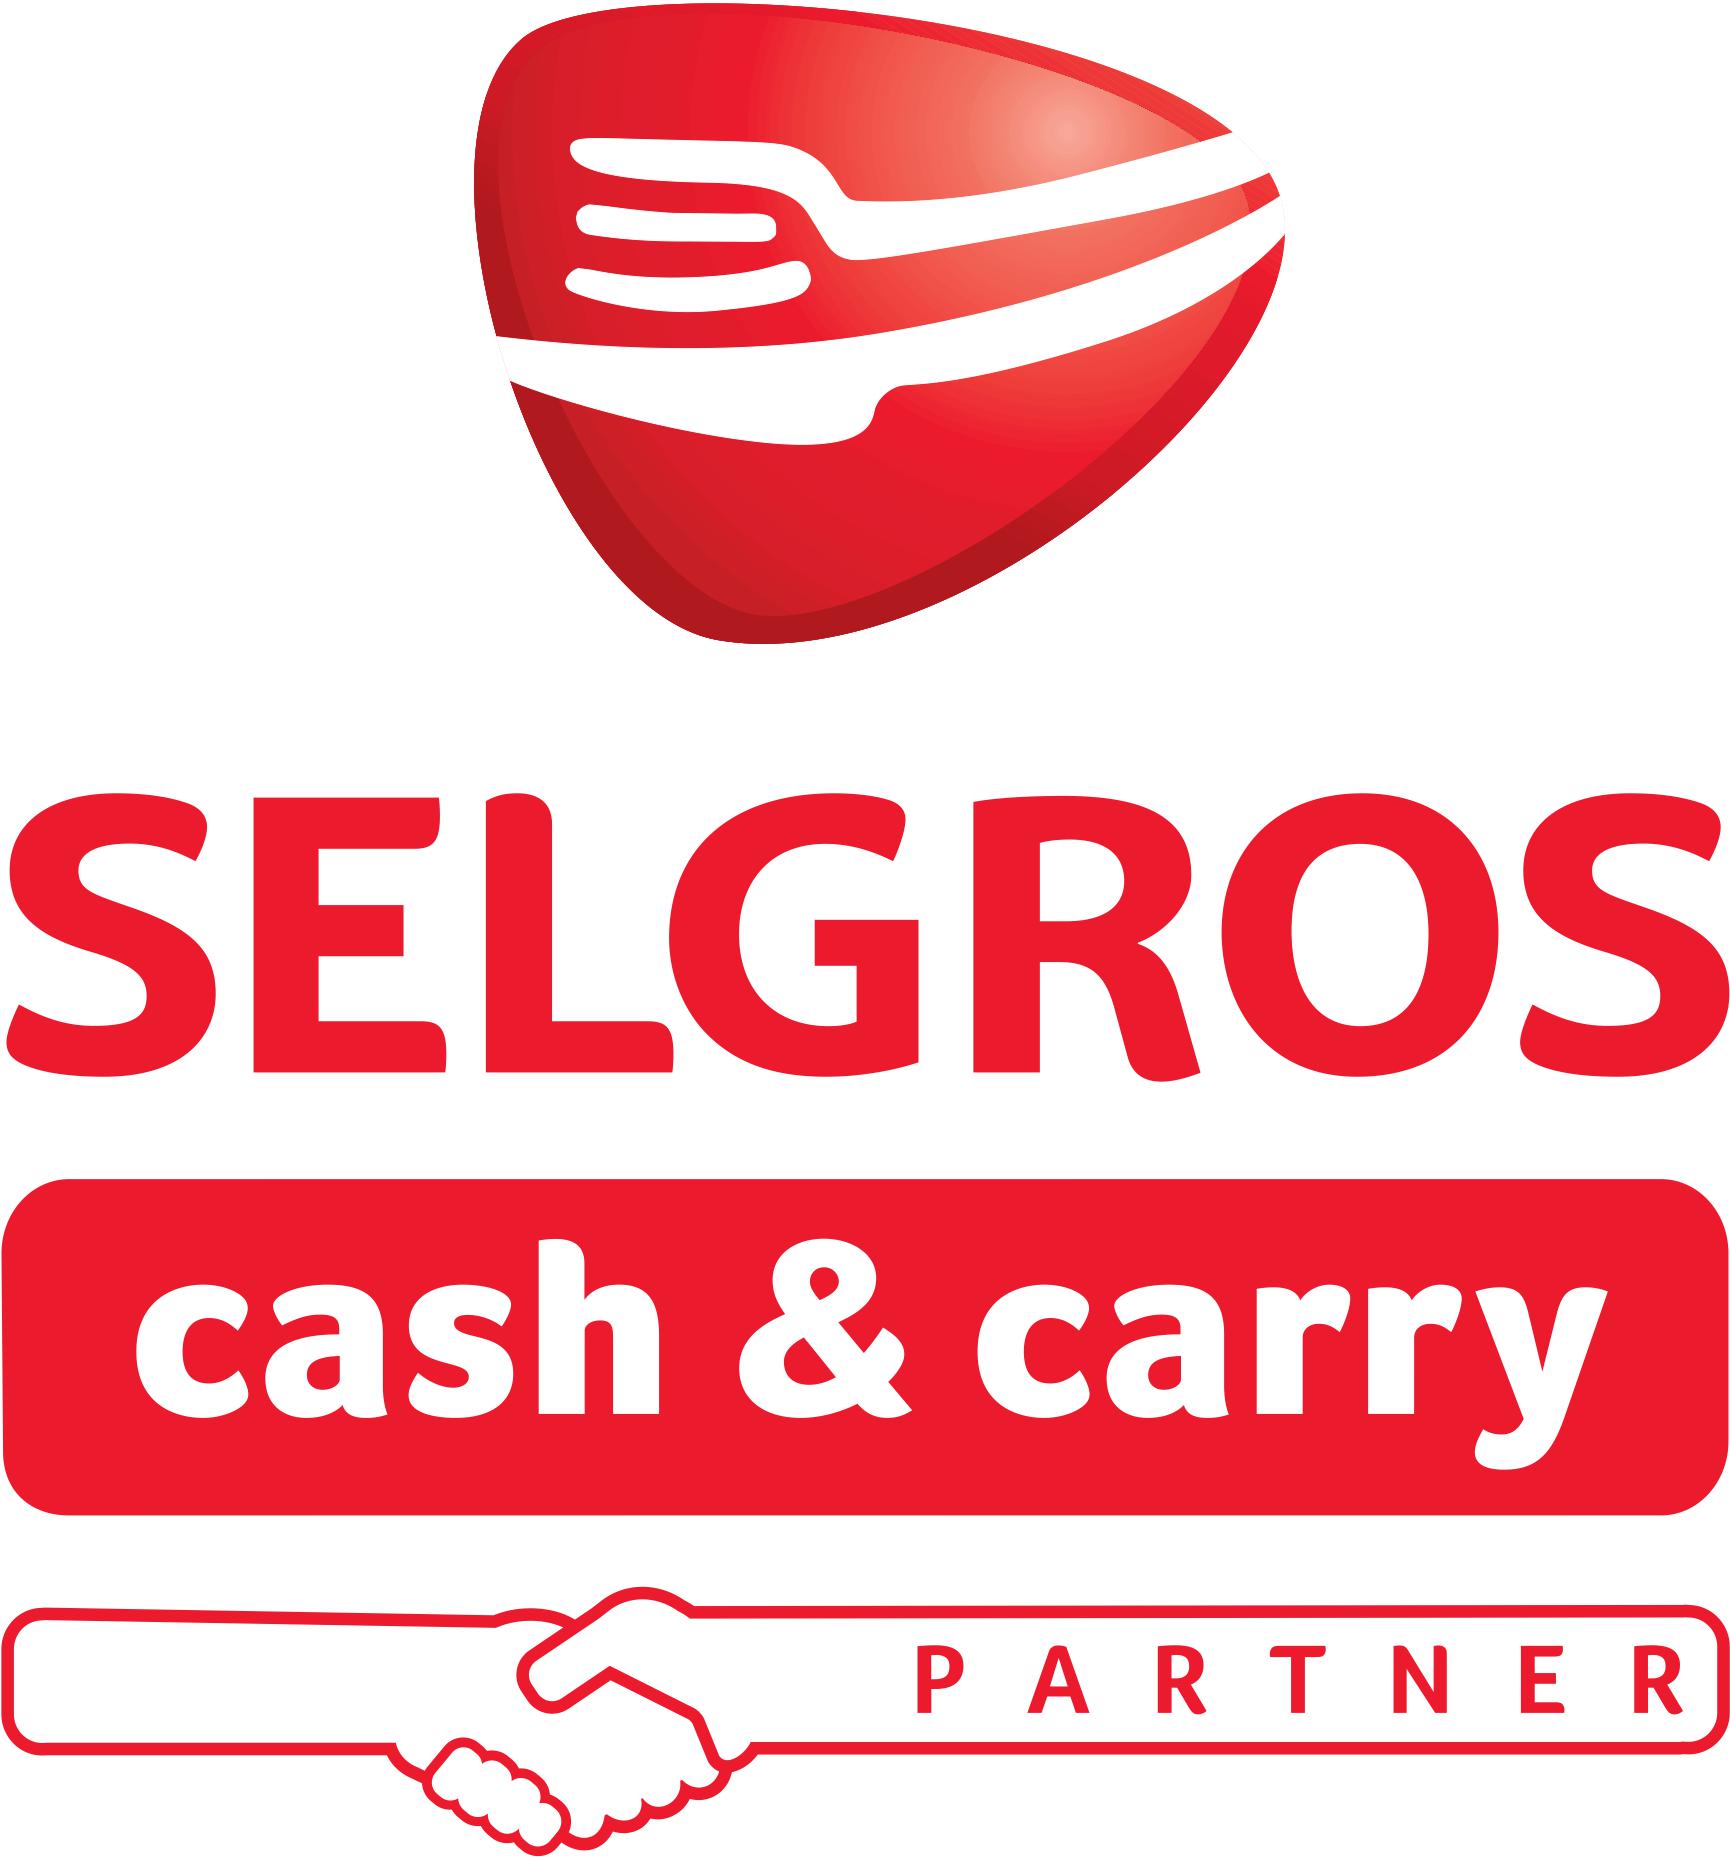 Selgros Partner logo